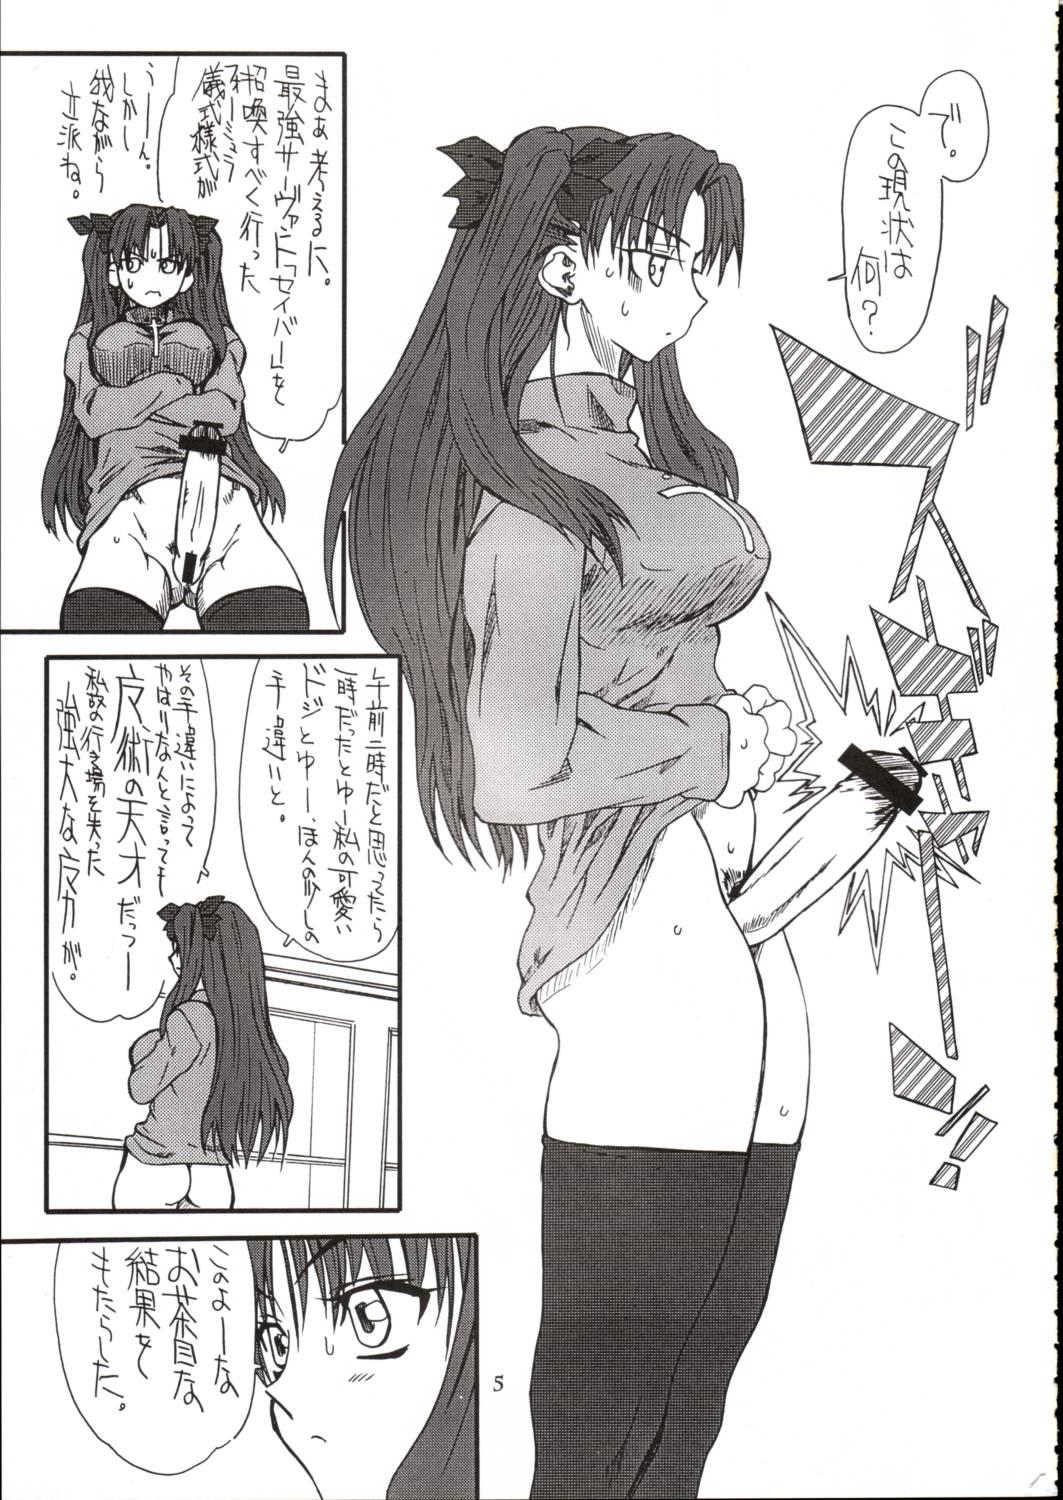 Machine Azuki Been - Fate stay night Pmv - Page 4